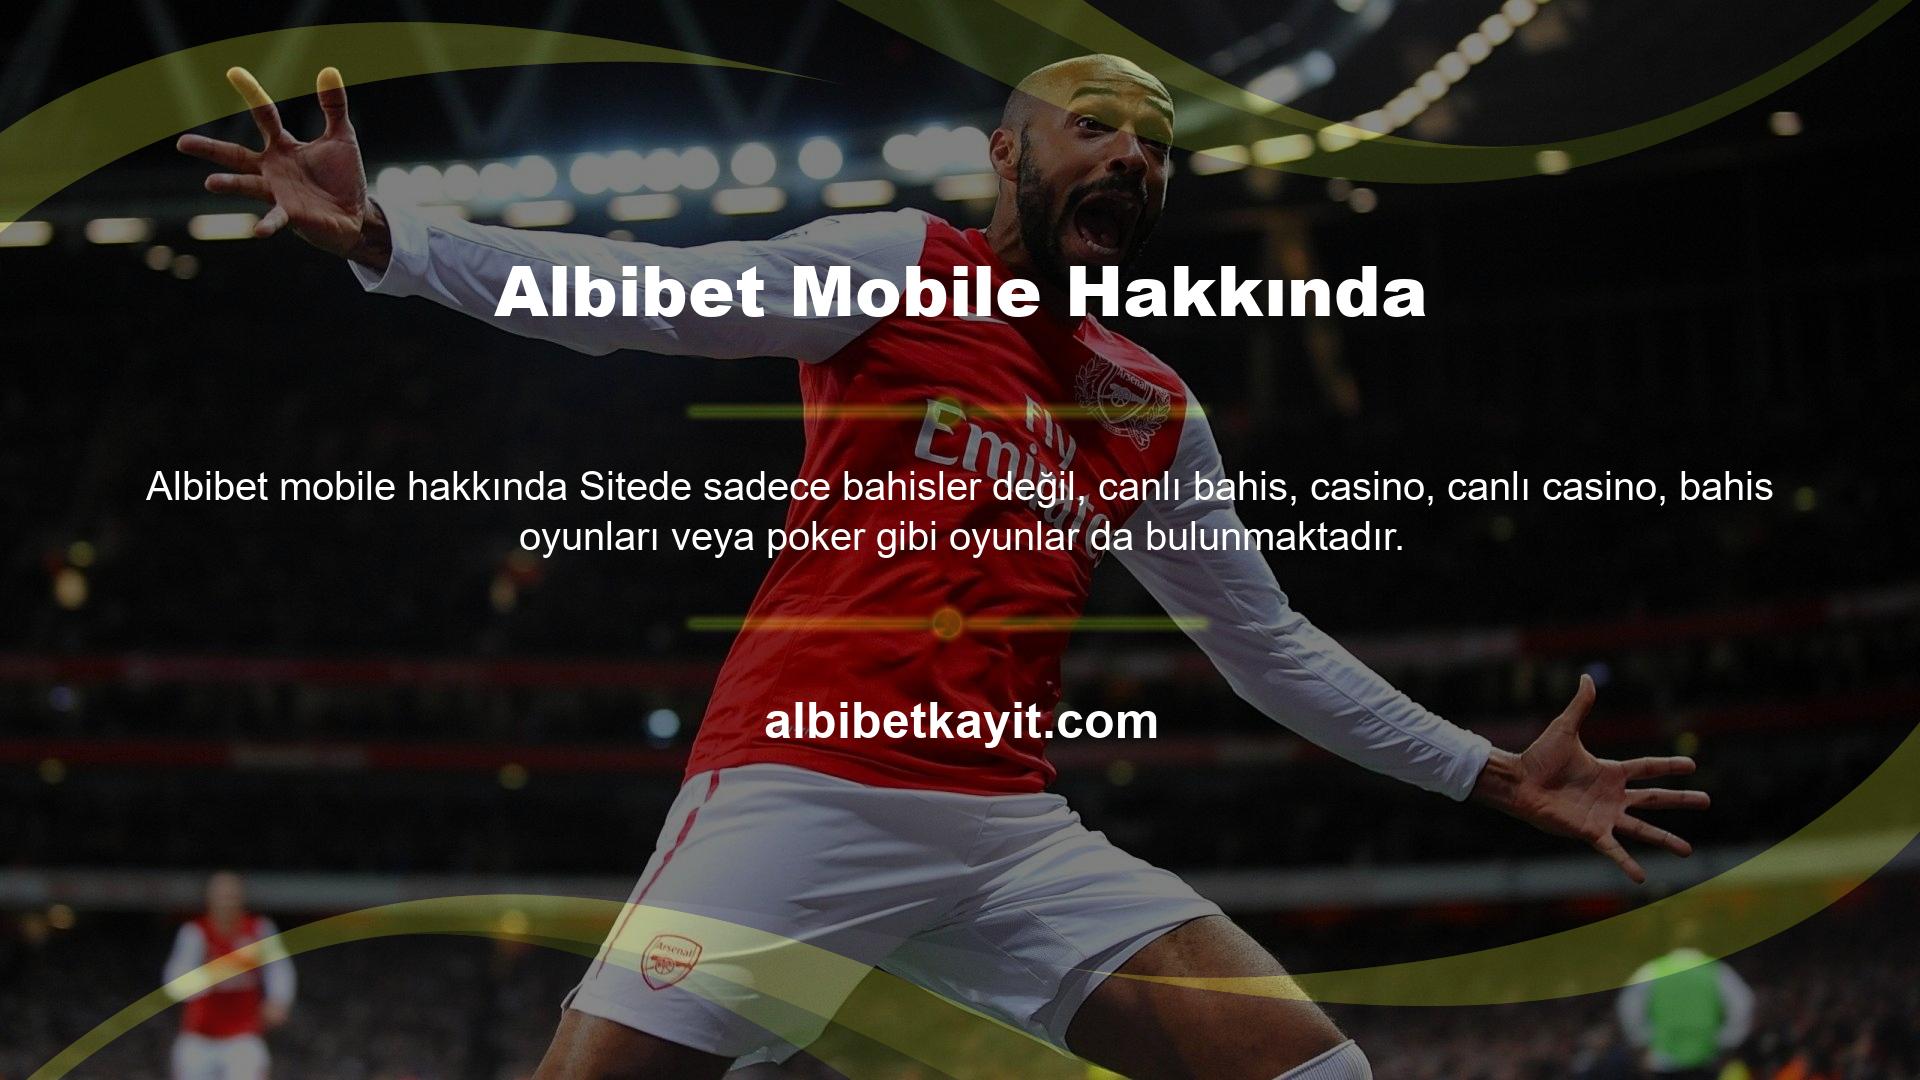 Albibet tüm Türkiye pazarına bakar ve Türk müşterilerine her zaman özel oyunlar ve özel bonuslar sunar